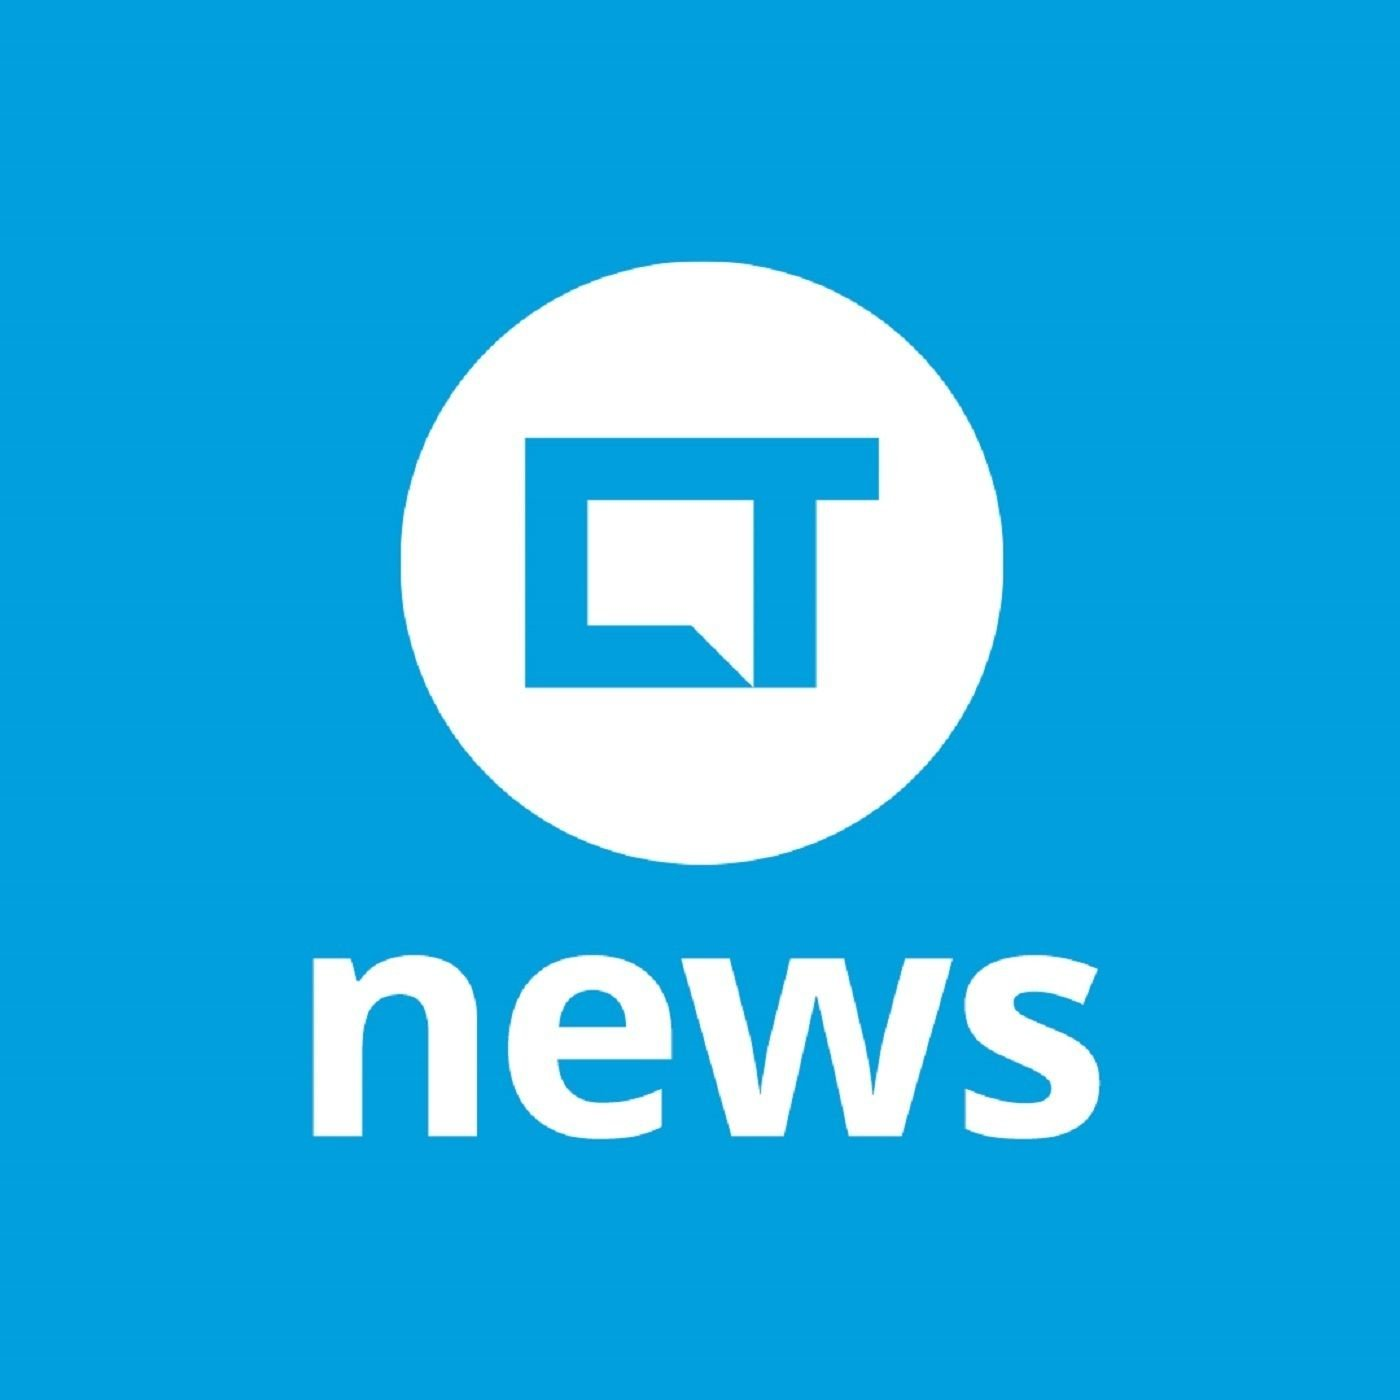 CT News - 21/05/2021(O Redmi Note 8, sim oito, está de volta)